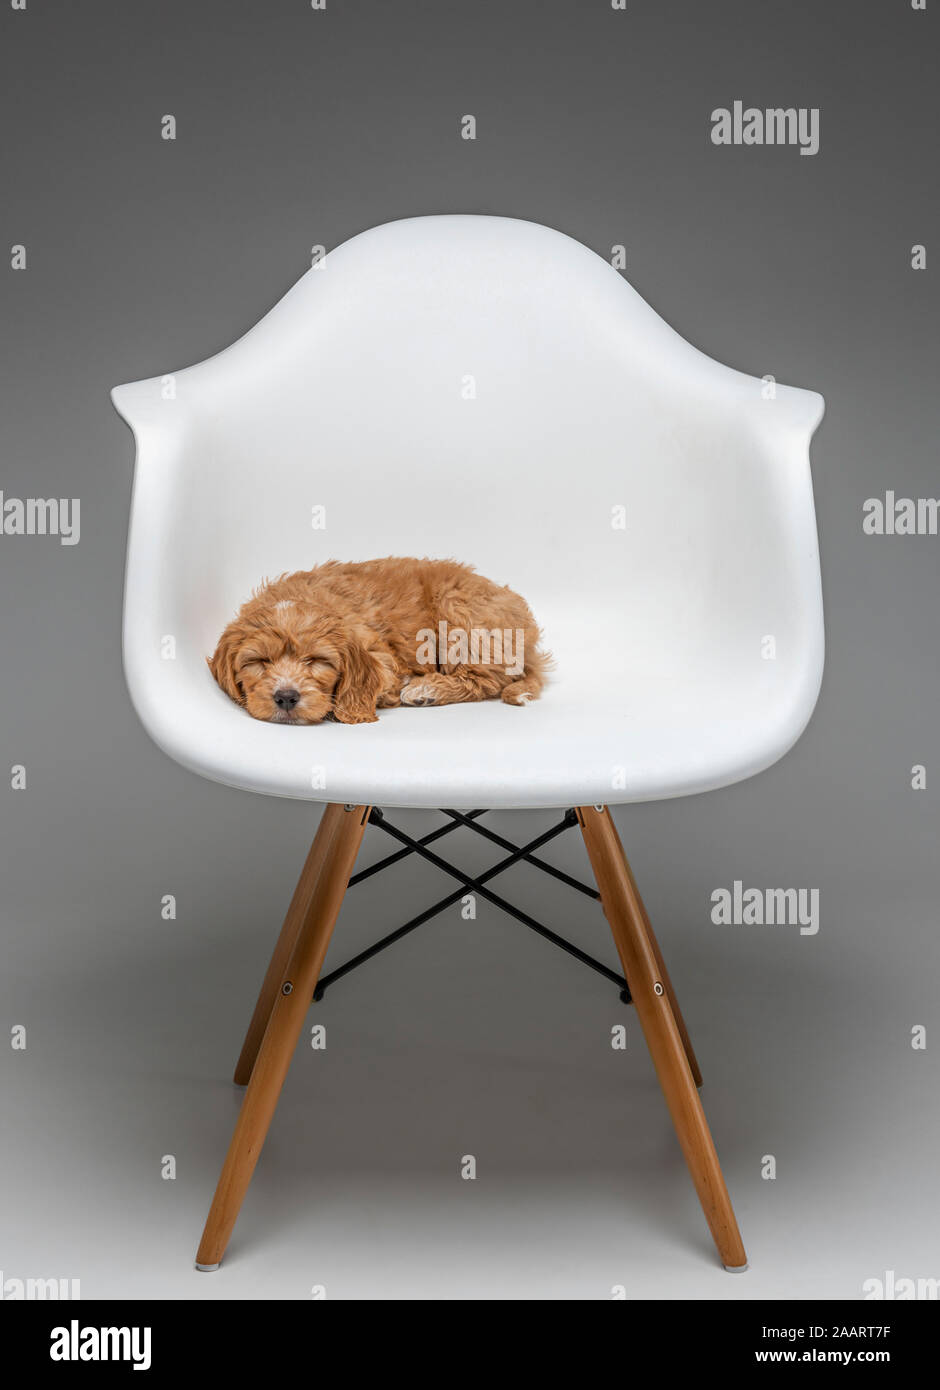 Cucciolo di Cockapoo albicocca addormentato in sedia Eames bianca. Foto Stock